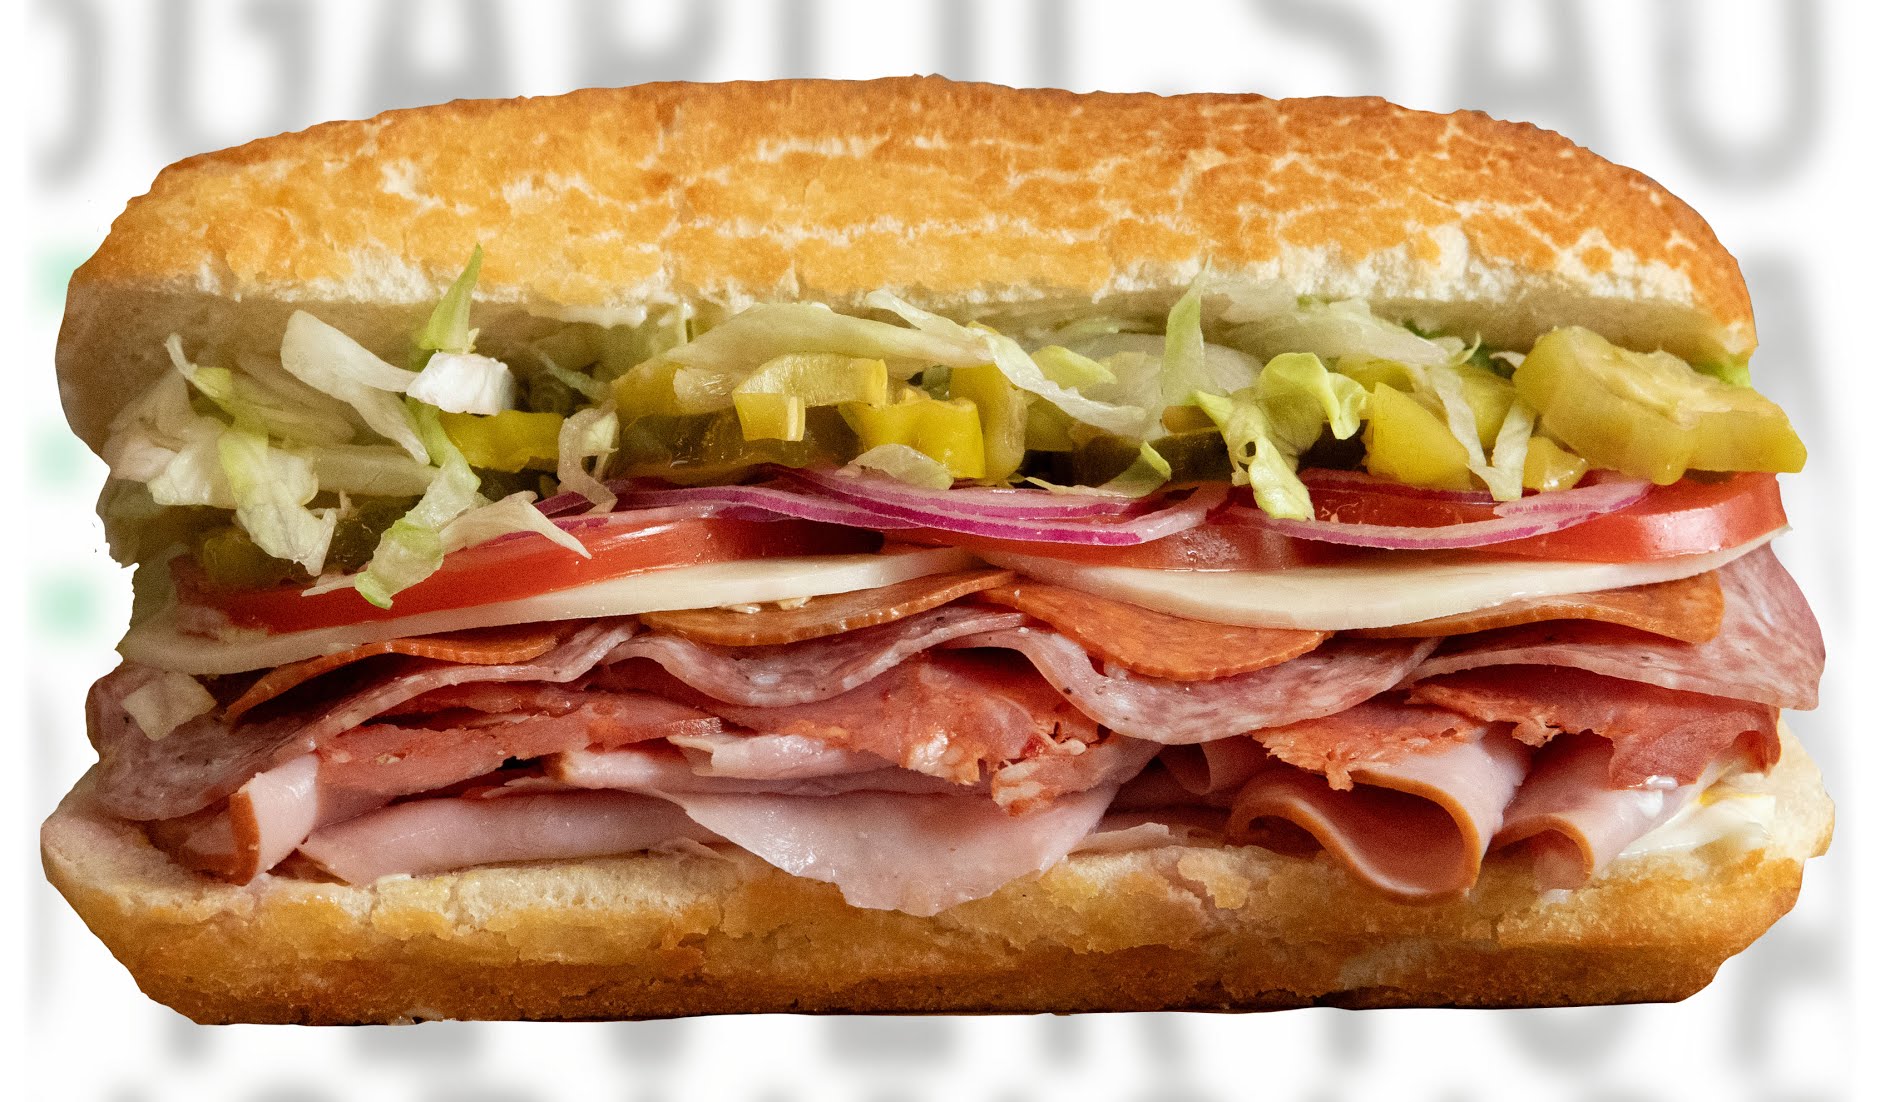 Mr. Pickle's Sandwich Shop - Modesto, CA image